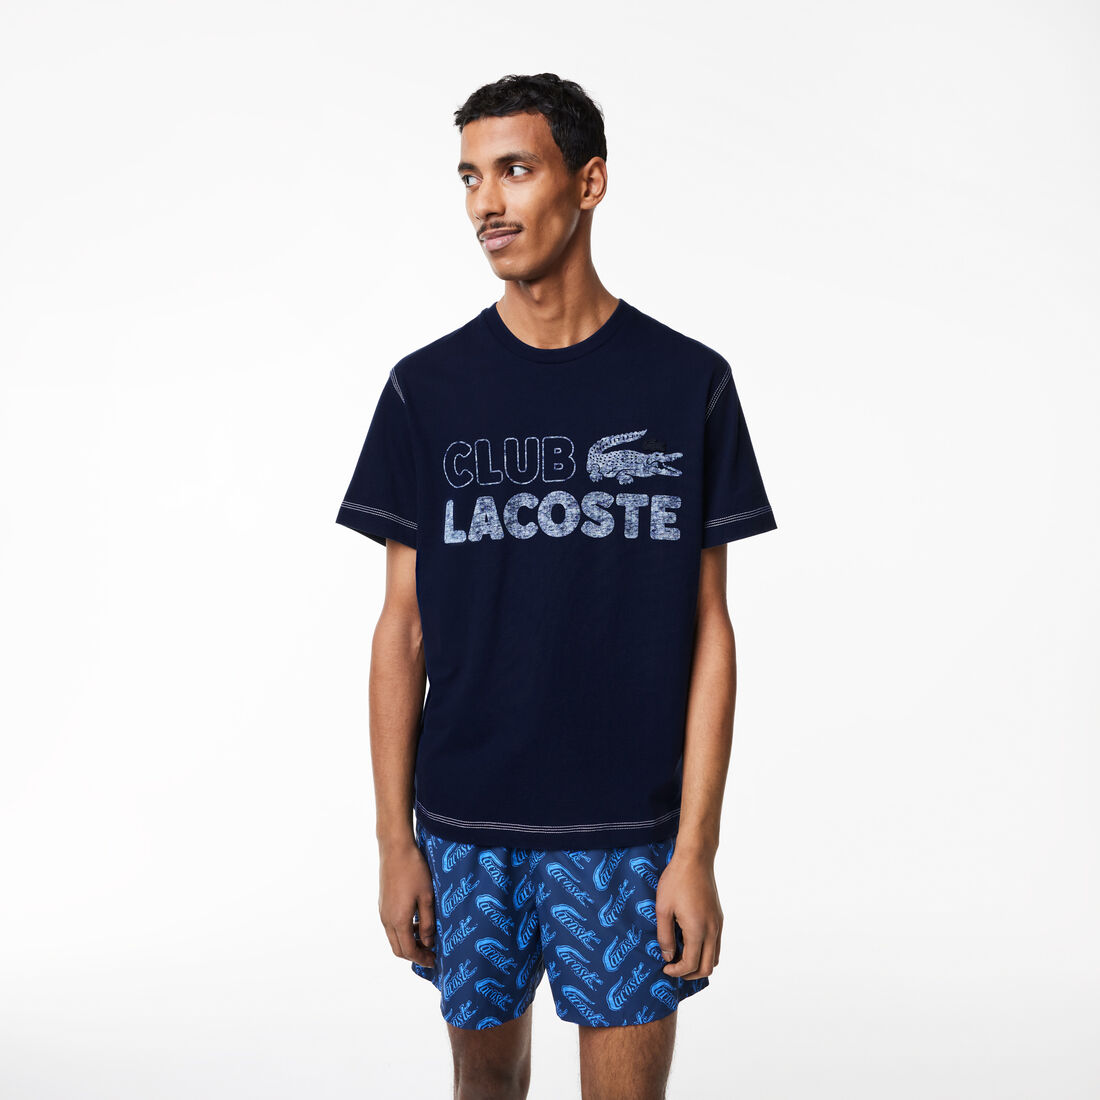 Men's Lacoste Vintage Print Organic Cotton T-shirt